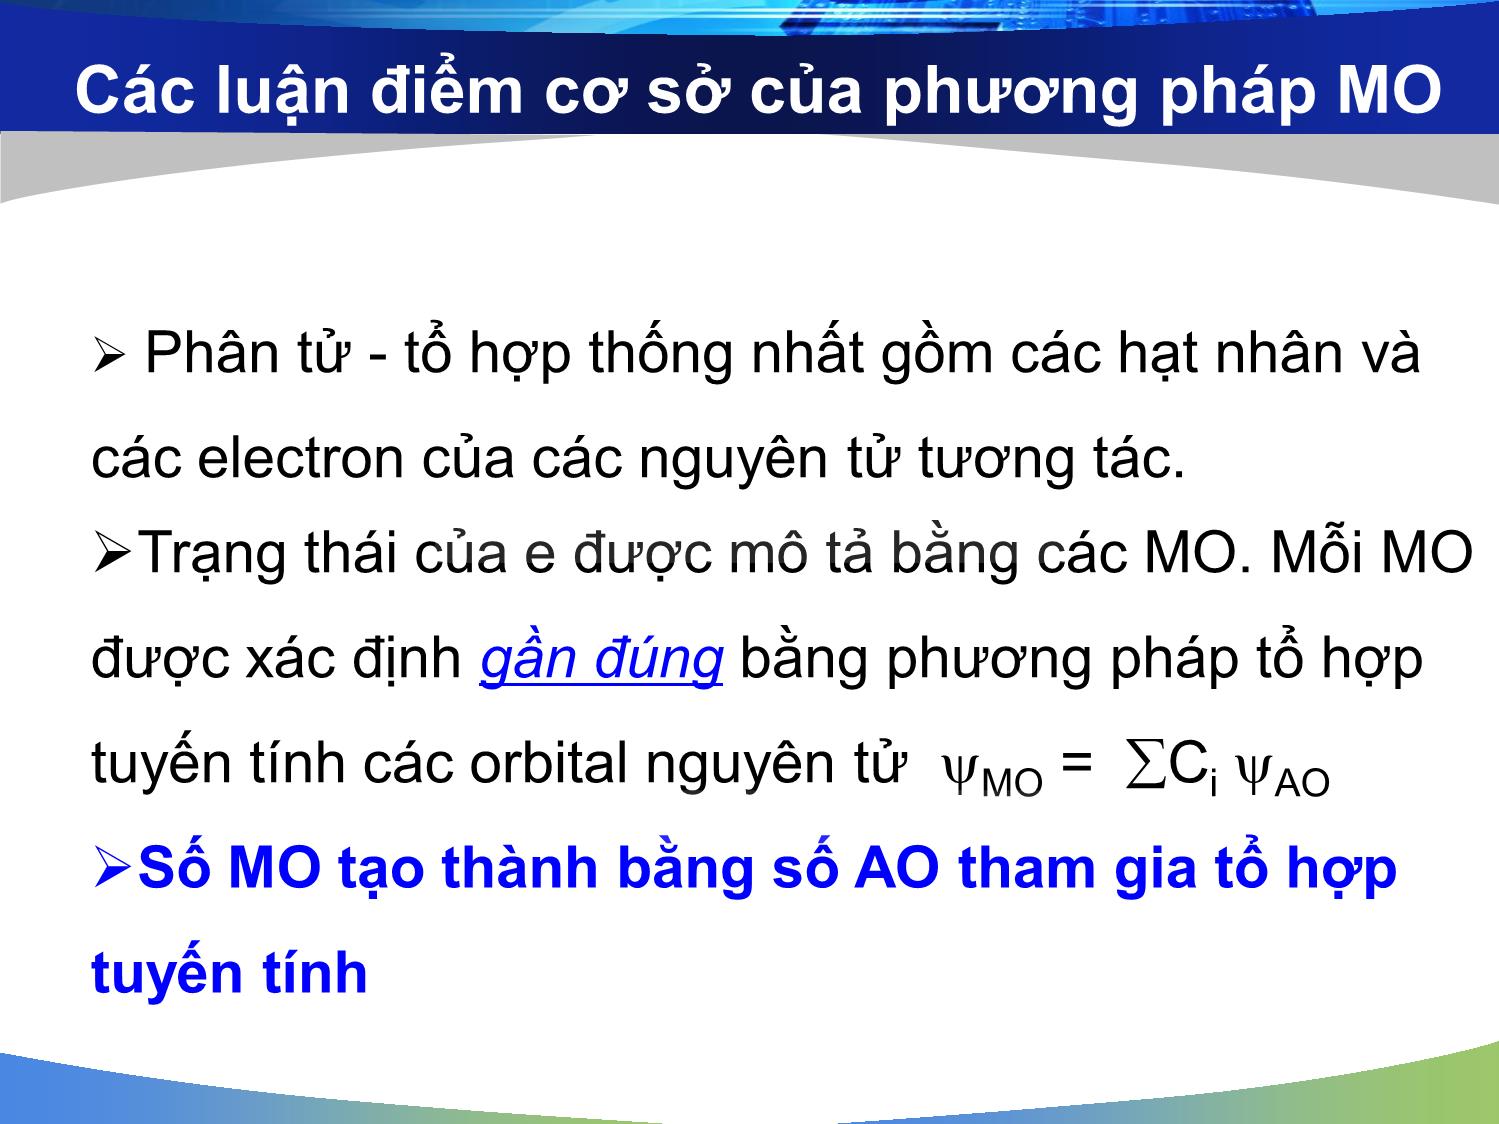 Bài giảng môn Hóa đại cương: Phương pháp orbital phân tử (Molecular Orbital - MO) - Nguyễn Minh Kha trang 6